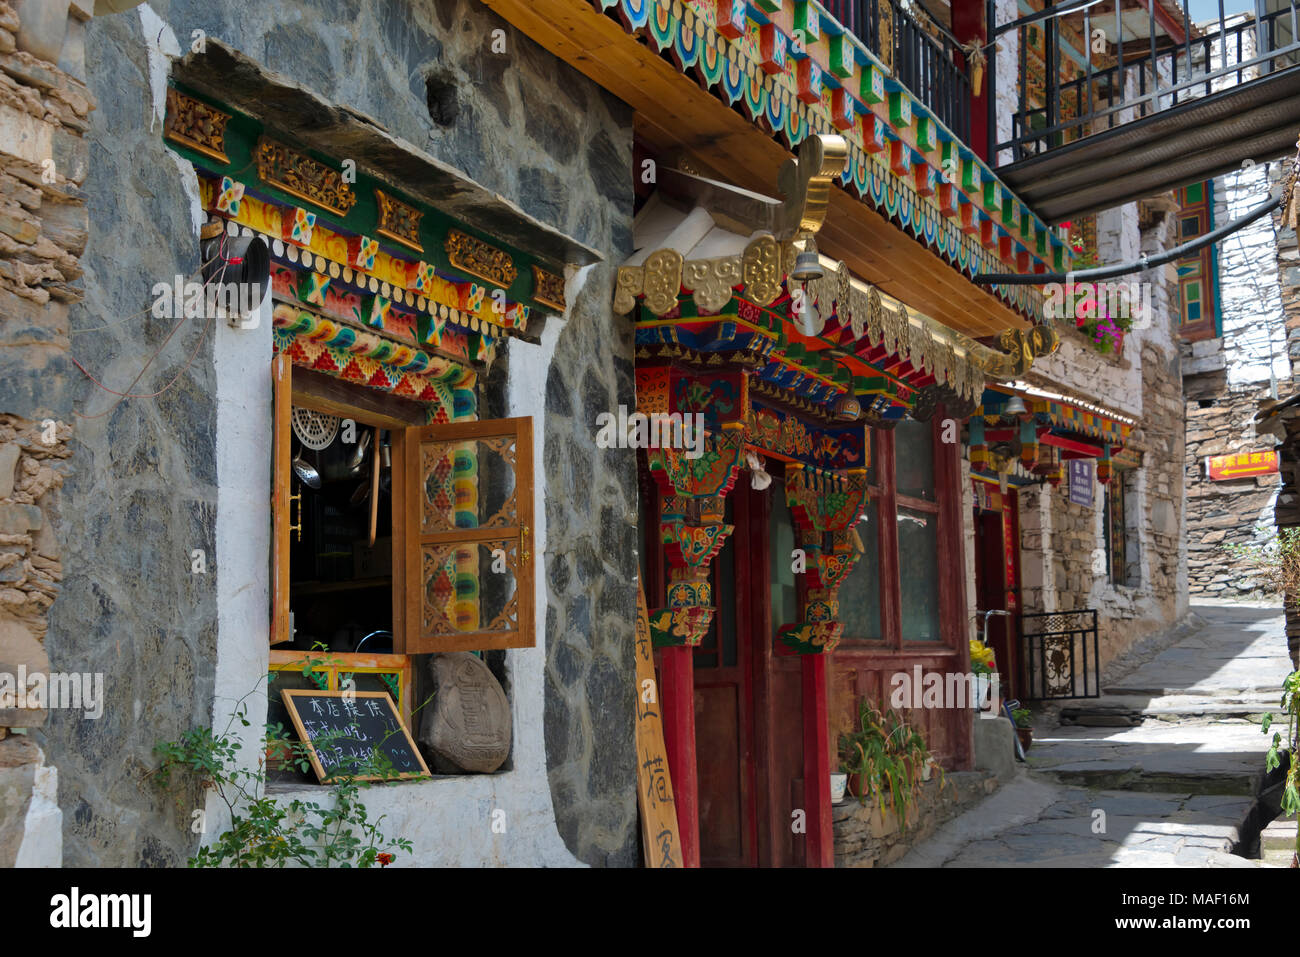 Zhuokeji Headman's Village, Ngawa Tibetan and Qiang Autonomous Prefecture, western Sichuan, China Stock Photo